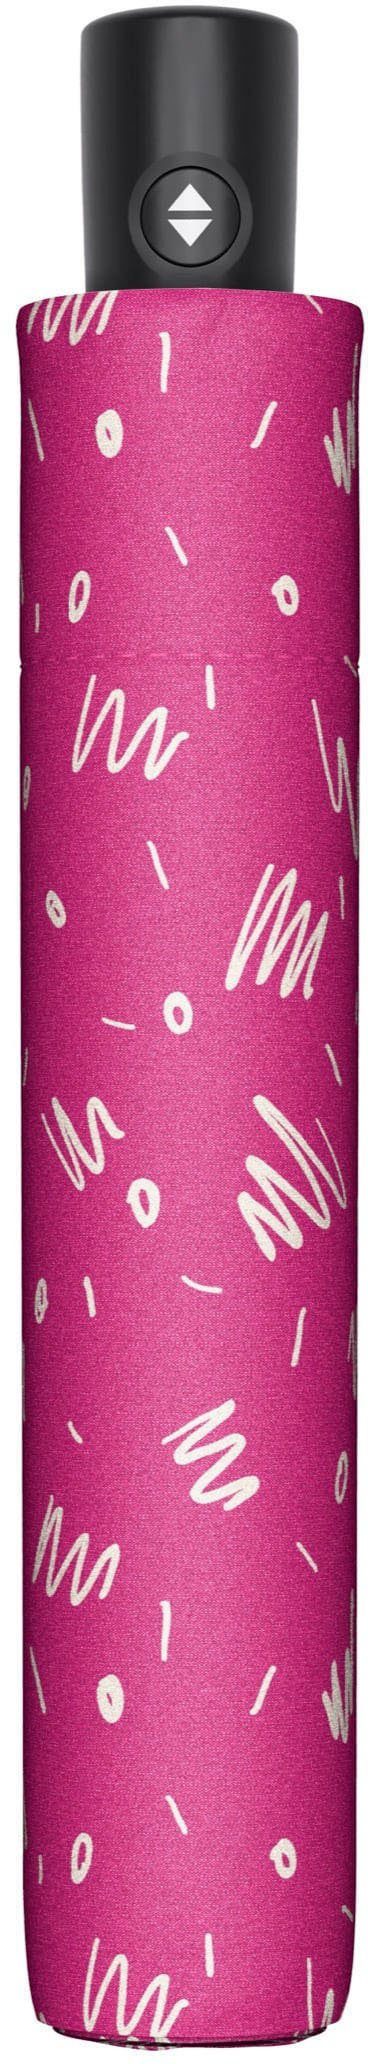 Taschenregenschirm doppler® zero pink Minimally, Magic fancy